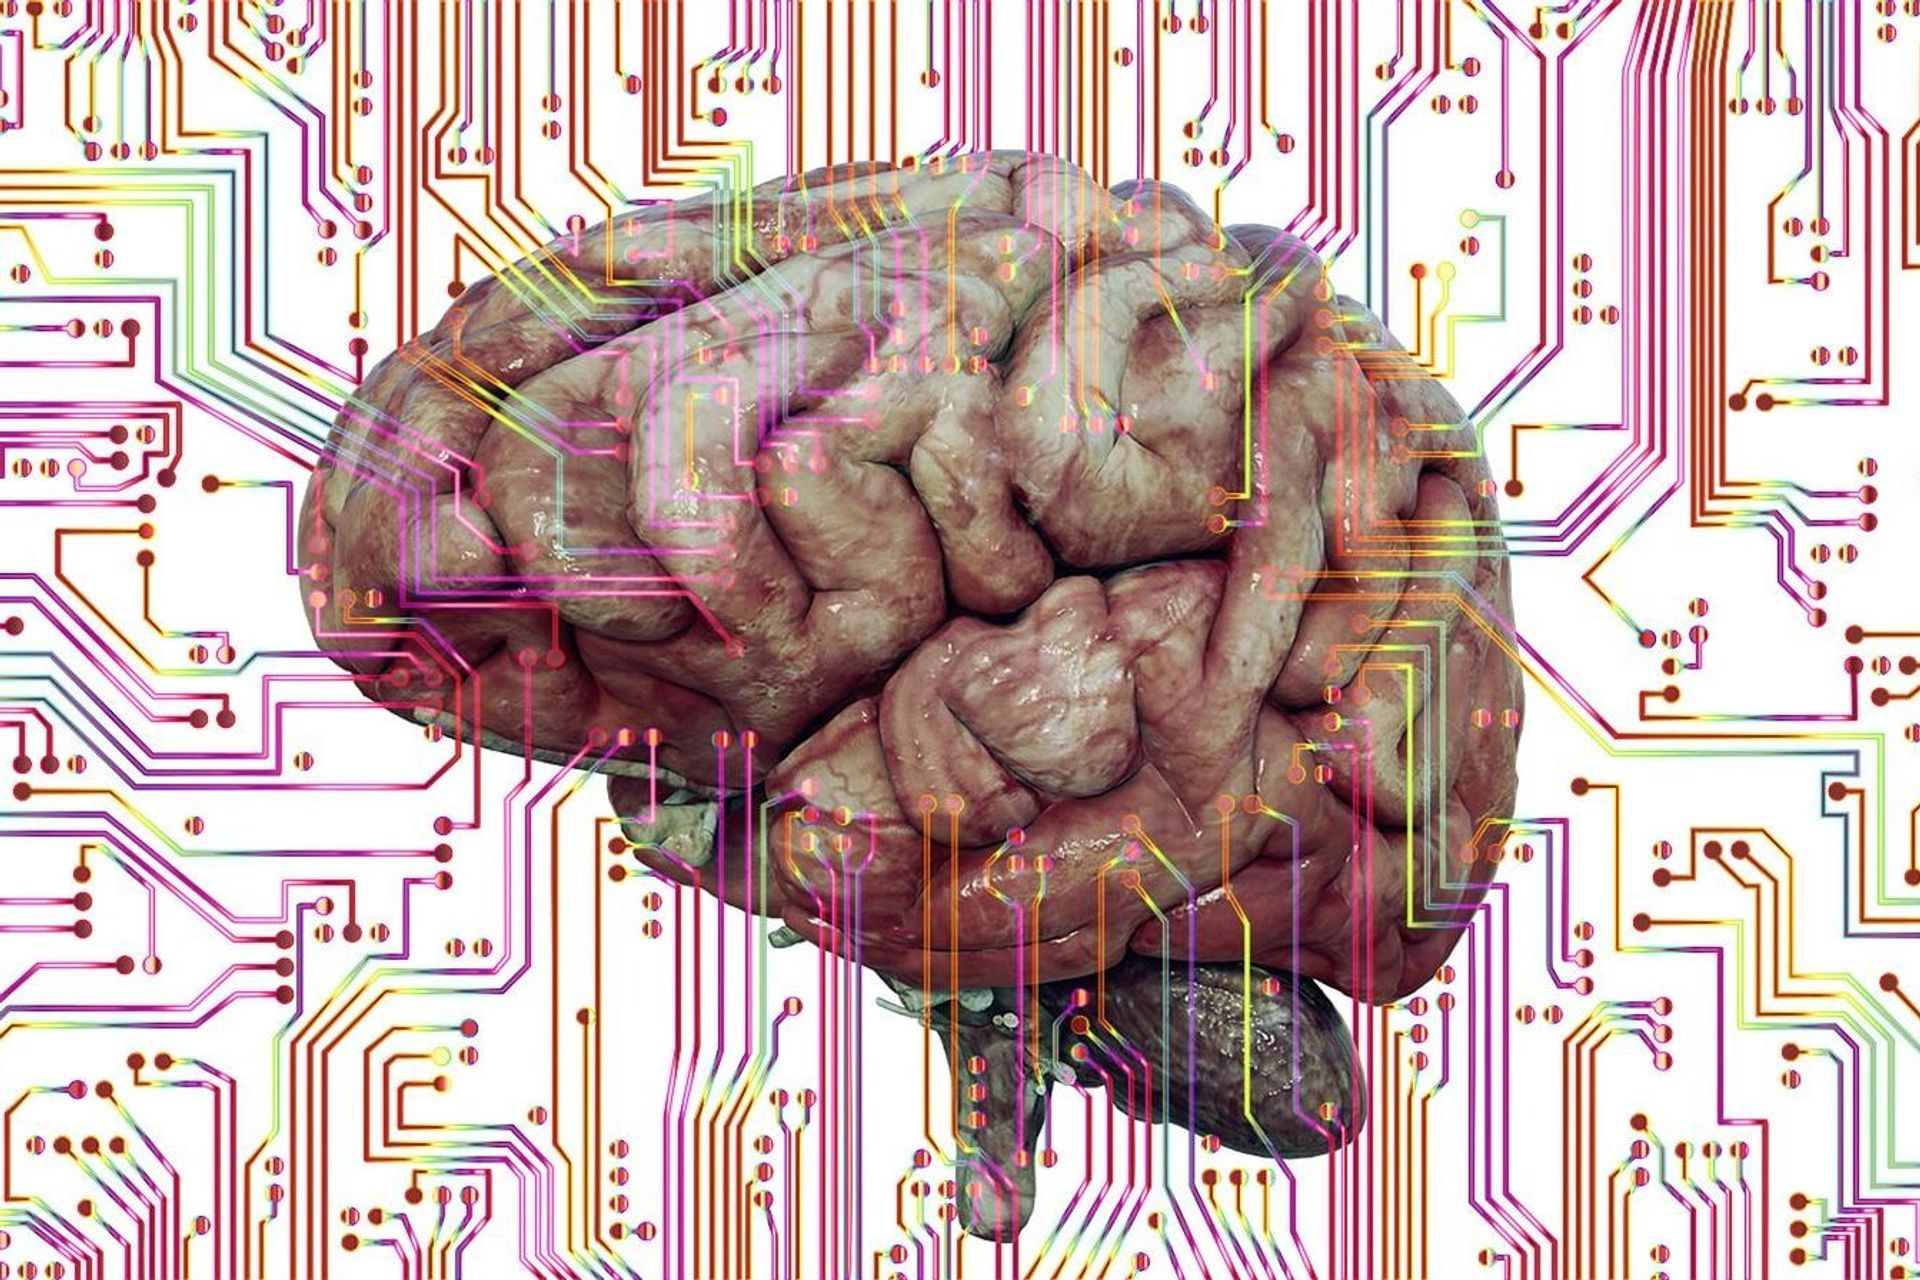 Gli algoritmi di intelligenza artificiale si basano su modelli matematici chiamati reti neurali, ispirati alla struttura biologica del cervello umano, che si compone di nodi interconnessi